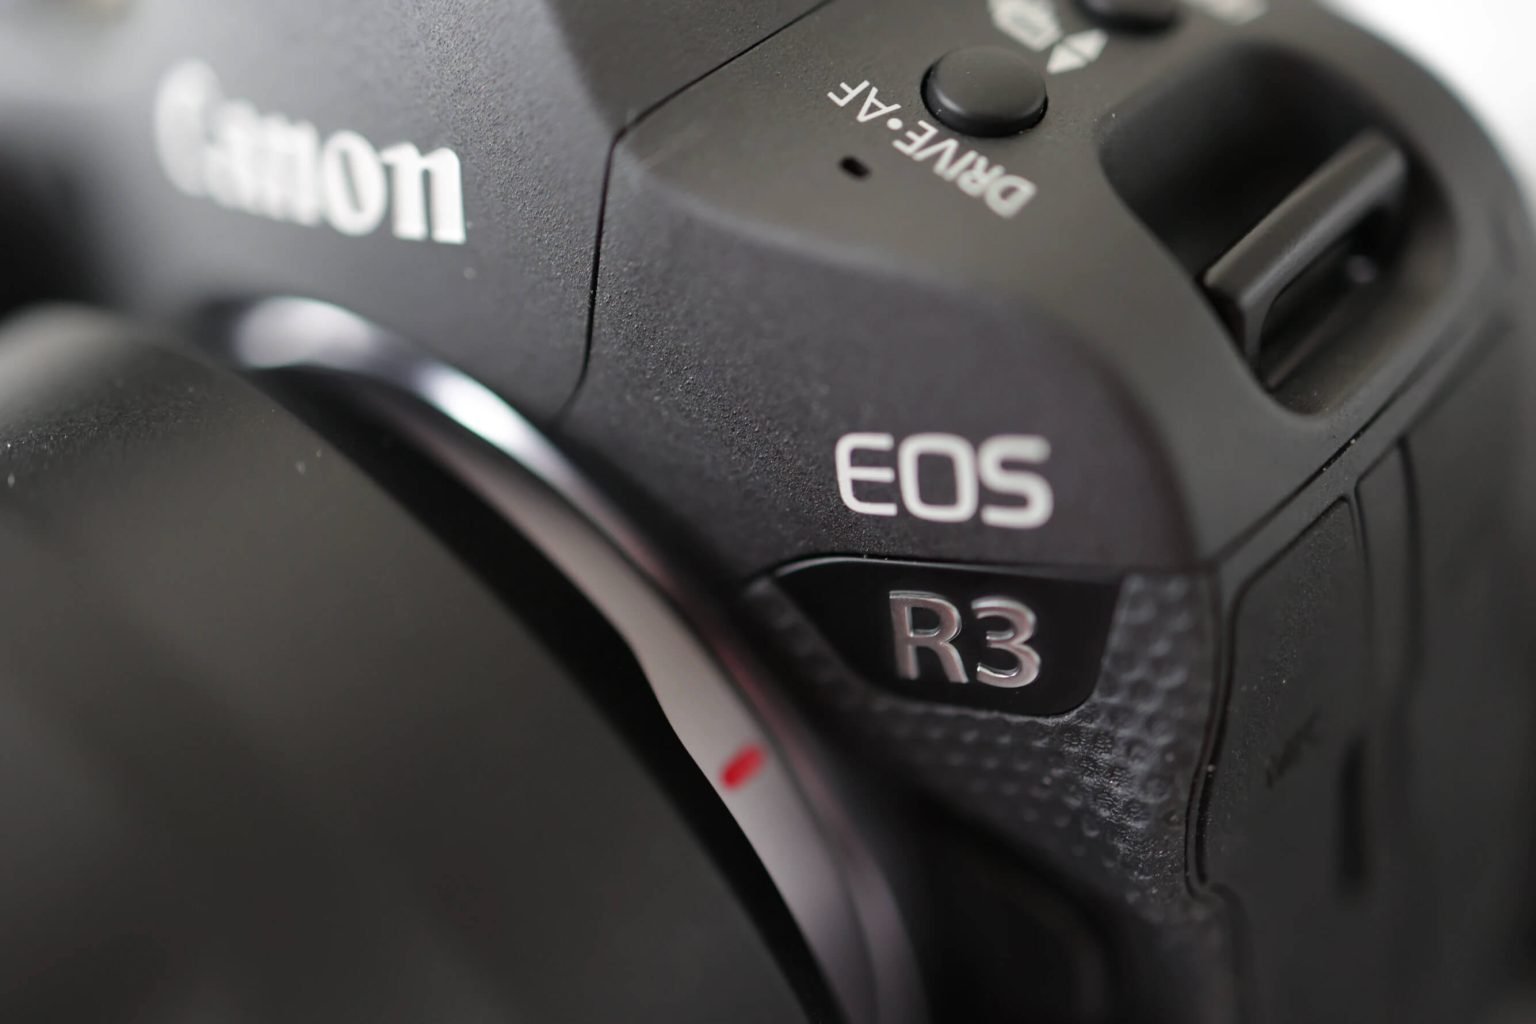 eosr3close 1536x1024 - Canon releases firmware v1.4.0 for the Canon EOS R3